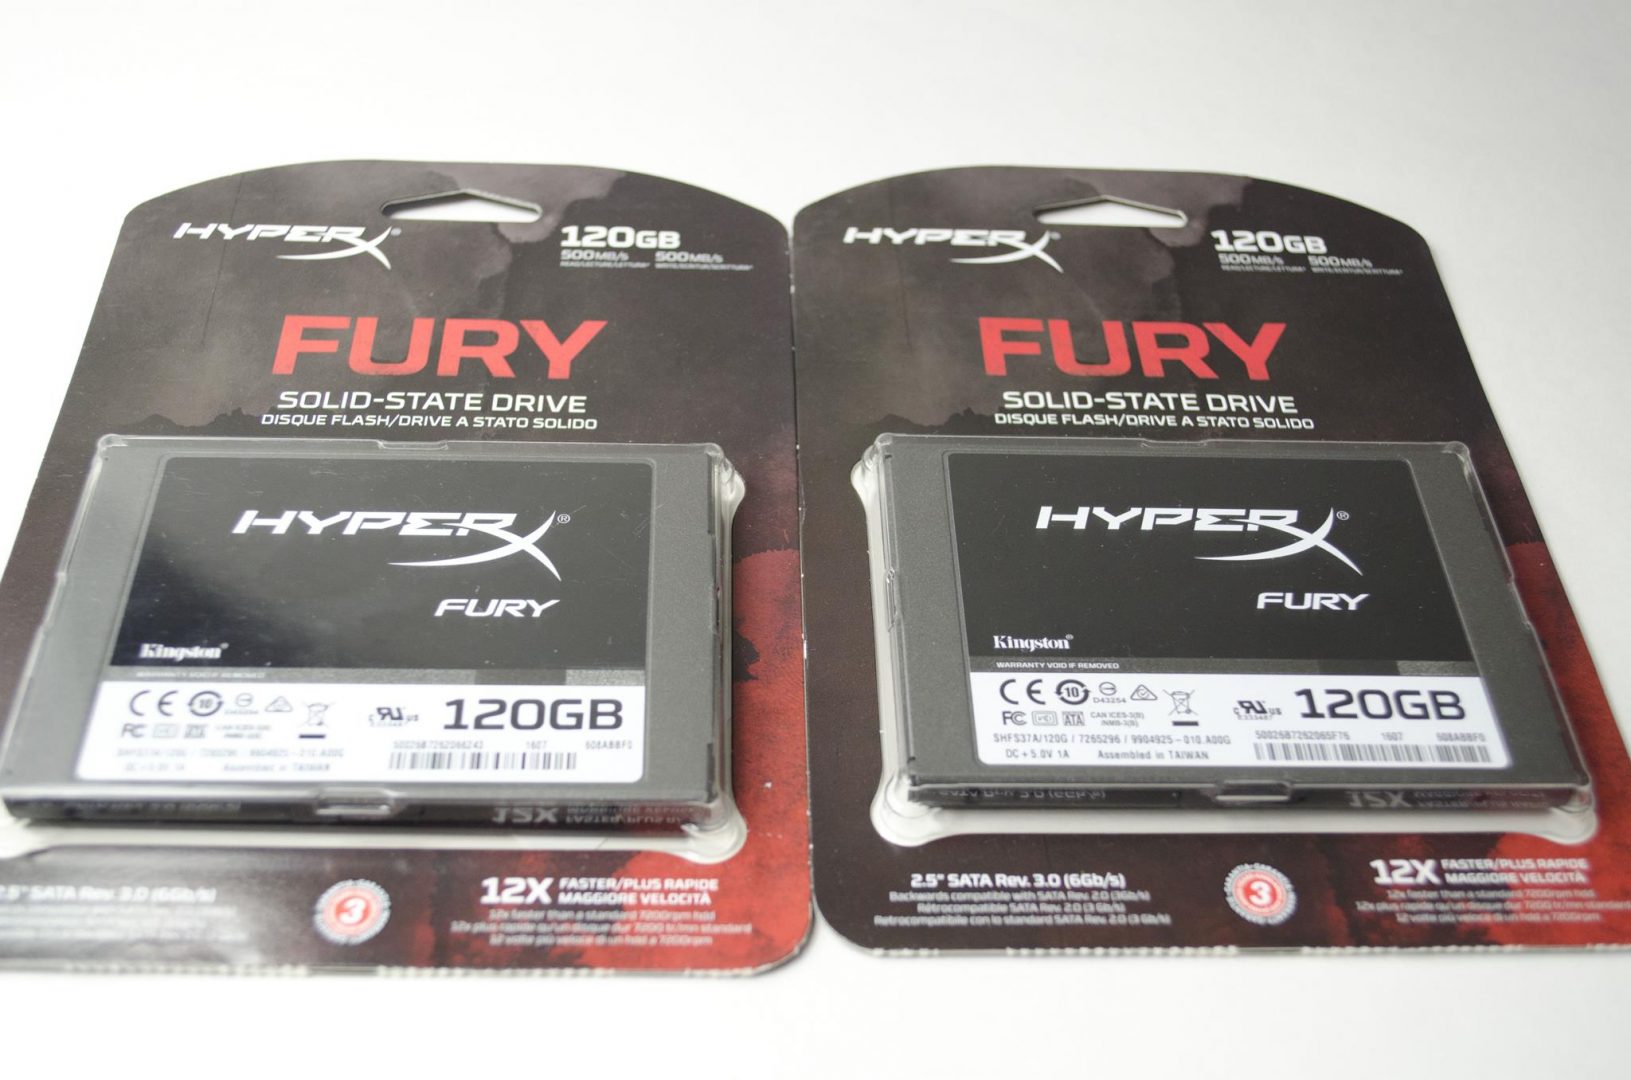 HyperX Fury SSD 120GB